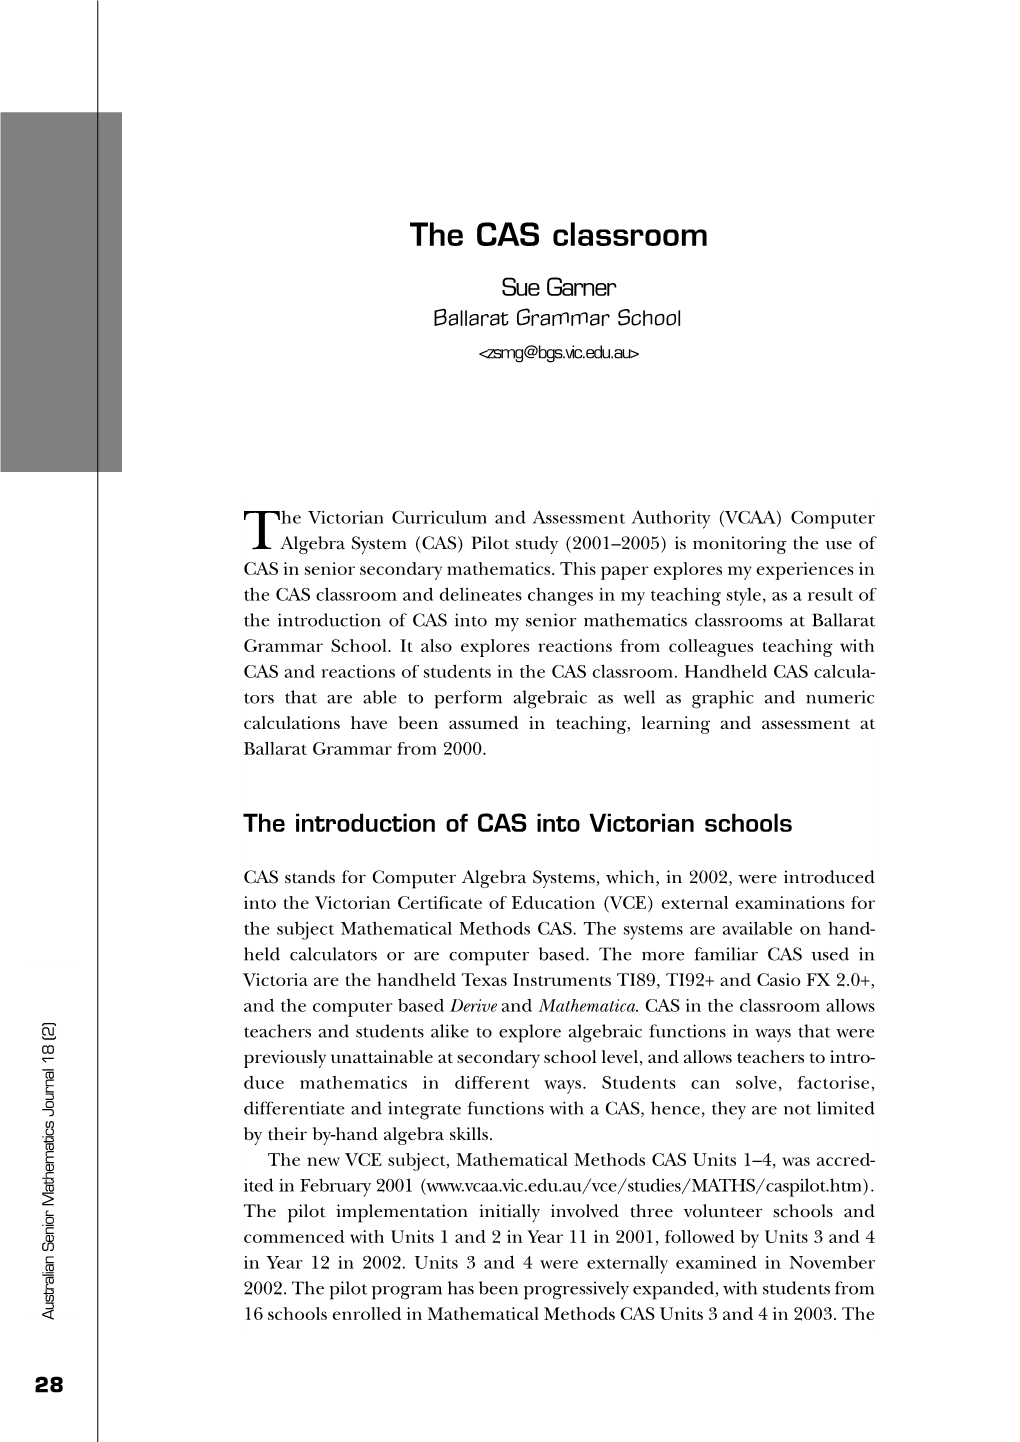 The CAS Classroom